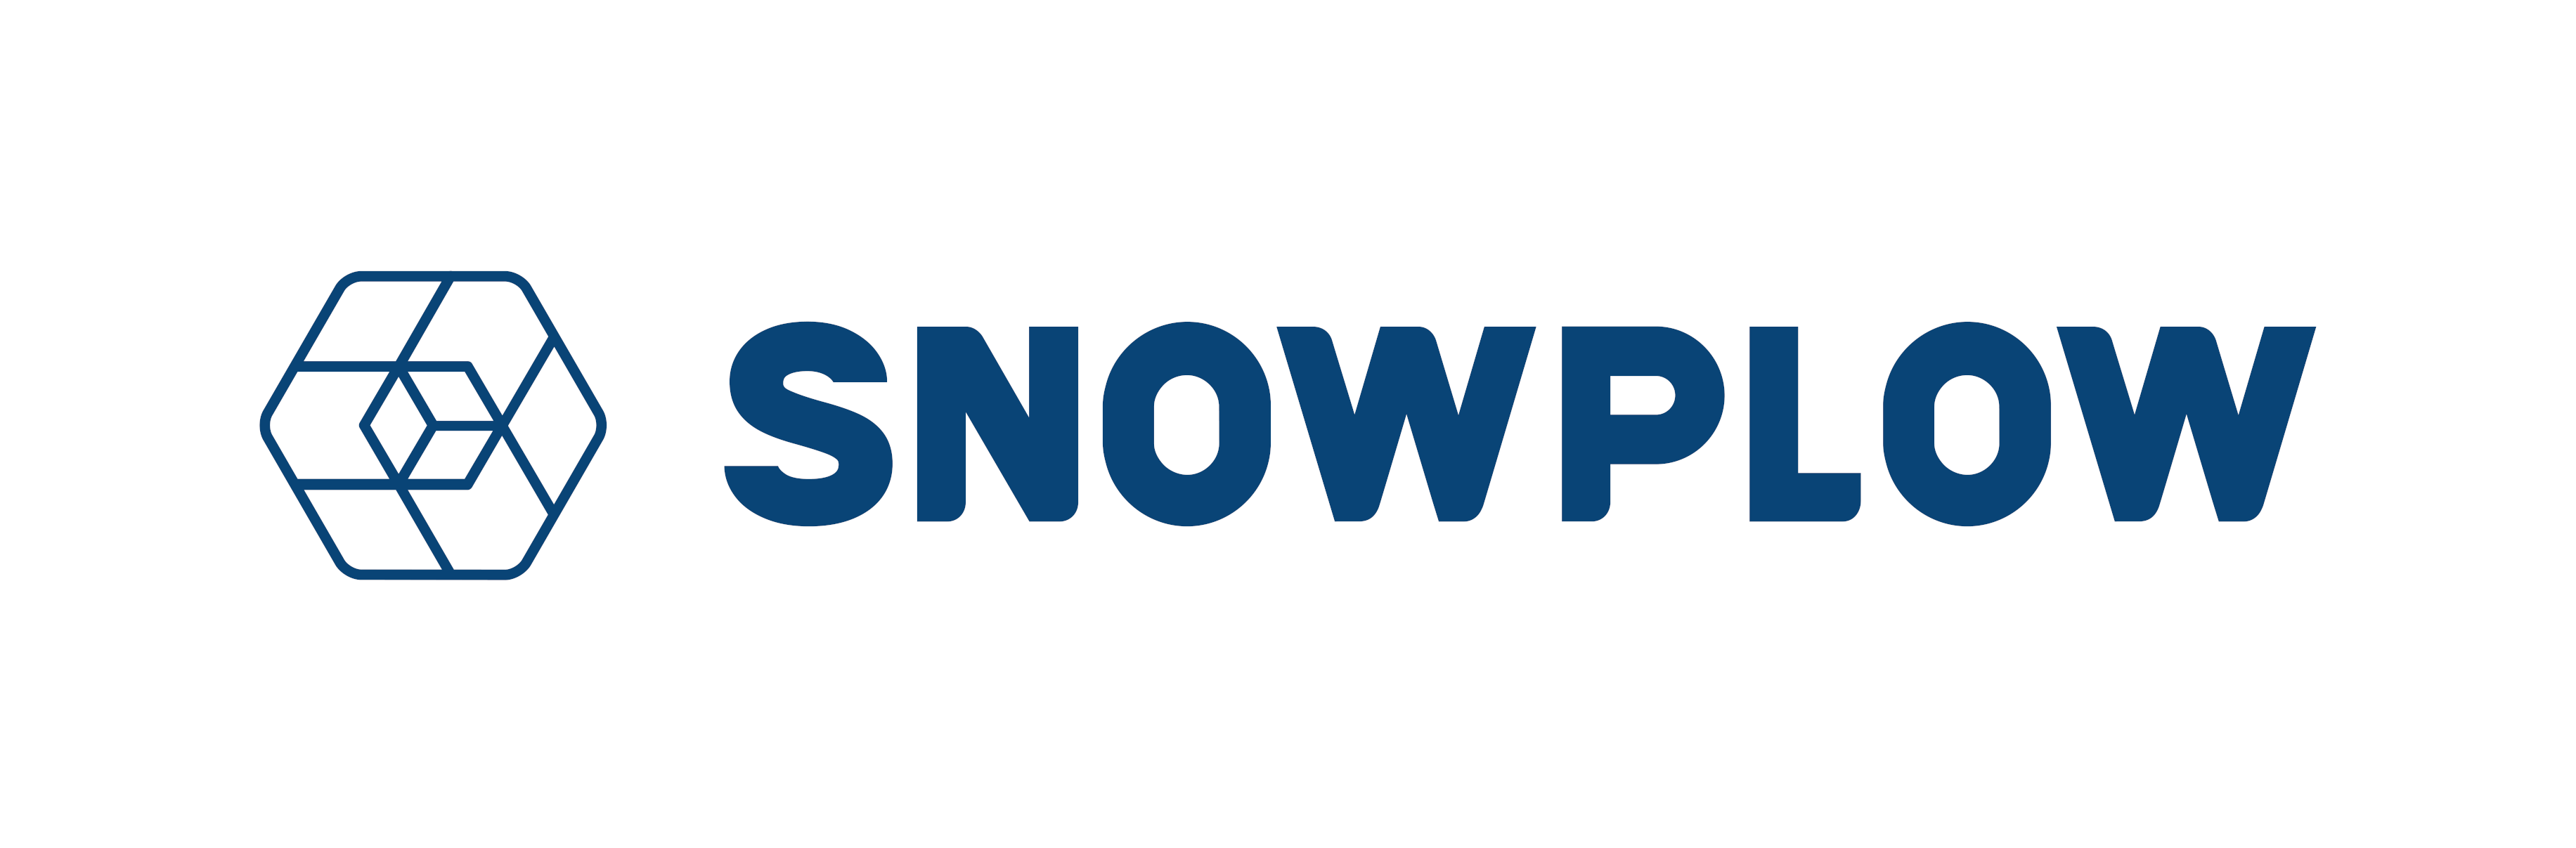 snowplow_logo